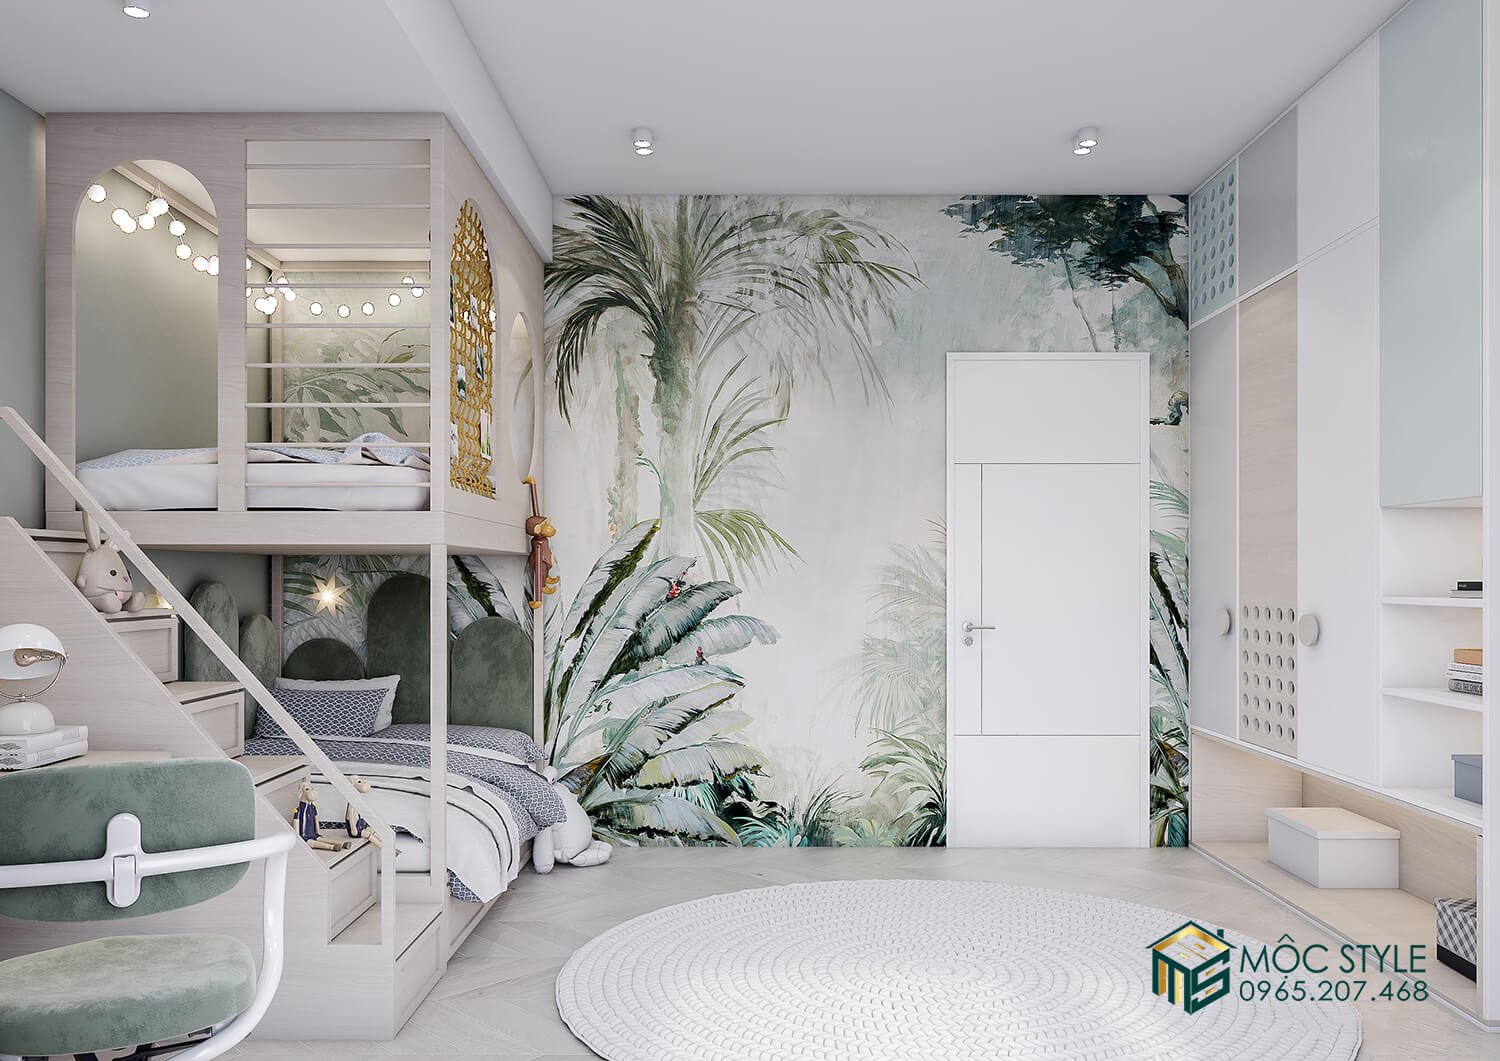 Bức tường với hình vẽ mang đậm phong cách tropical